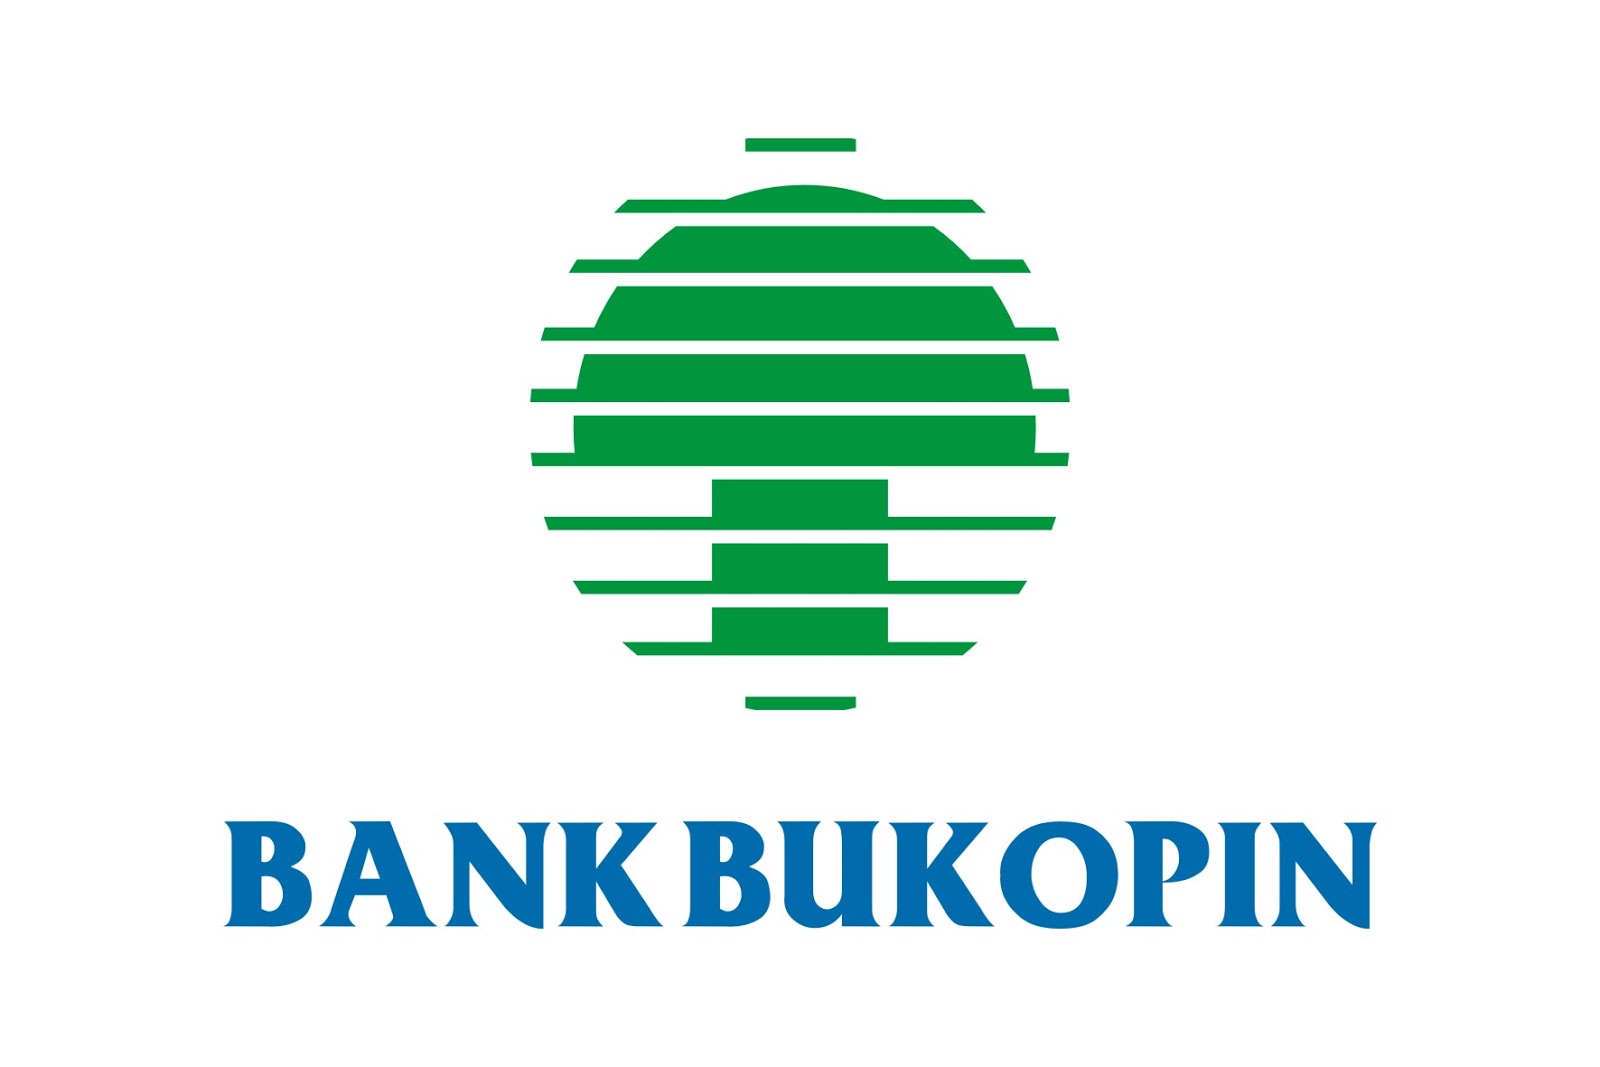 Bank Bukopin Sijunjung